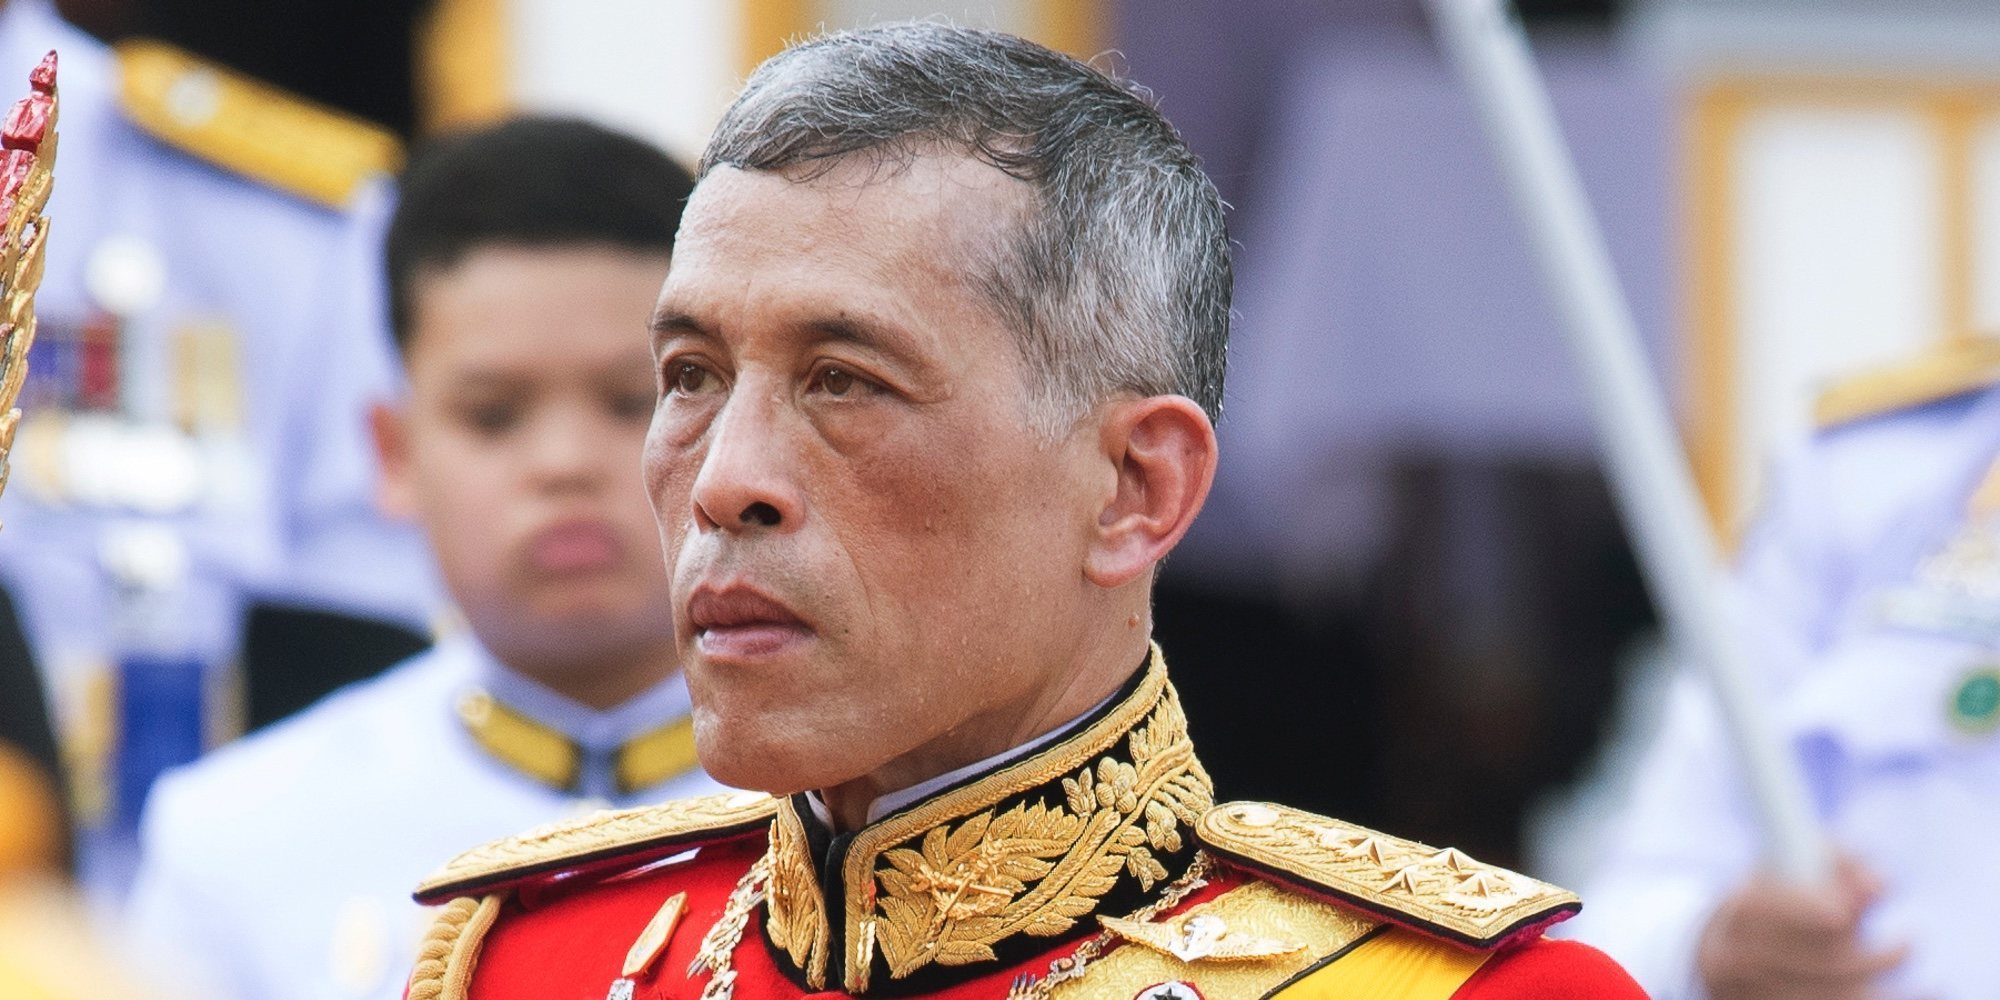 El Rey de Tailandia se casa en secreto justo antes de su coronación